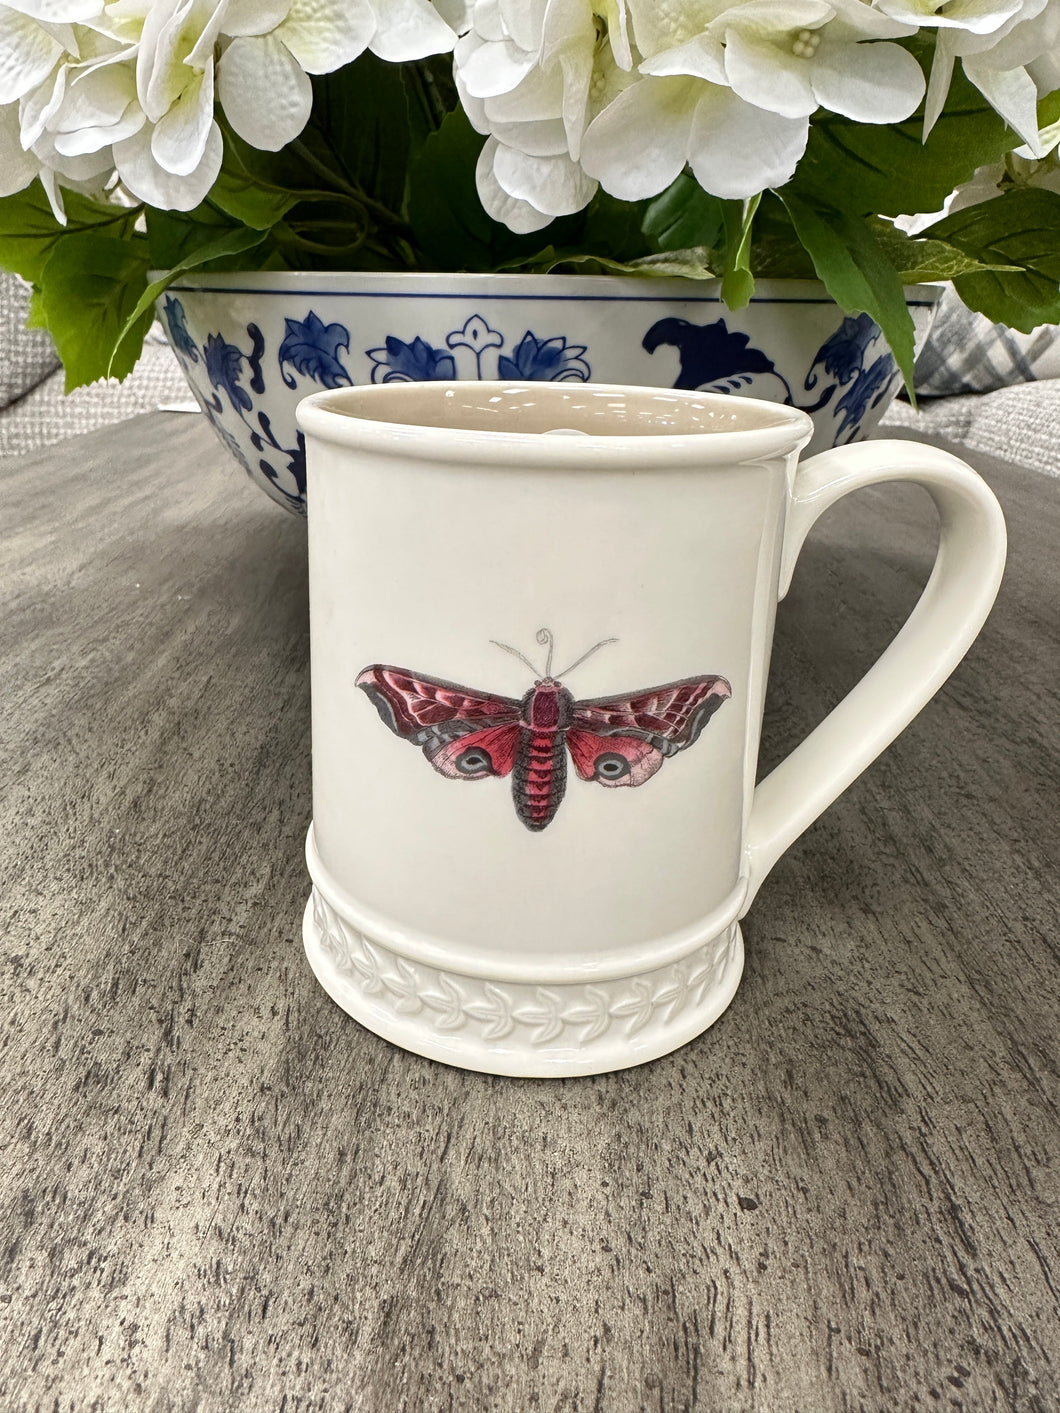 Dragonfly Coffee Mug